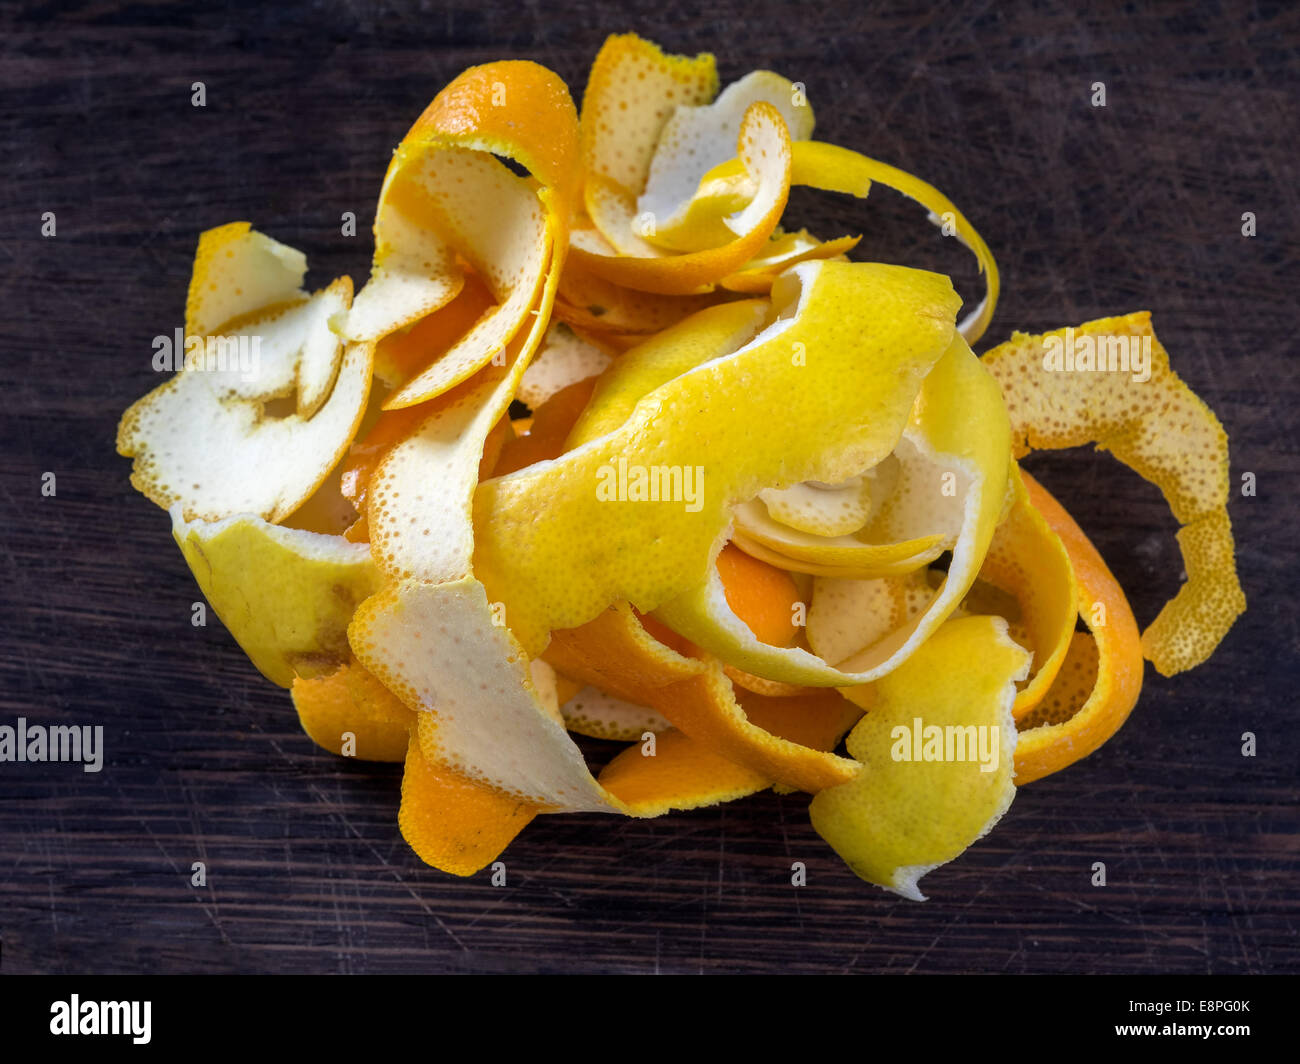 L'orange et le zeste de citron prêt à cuire Banque D'Images